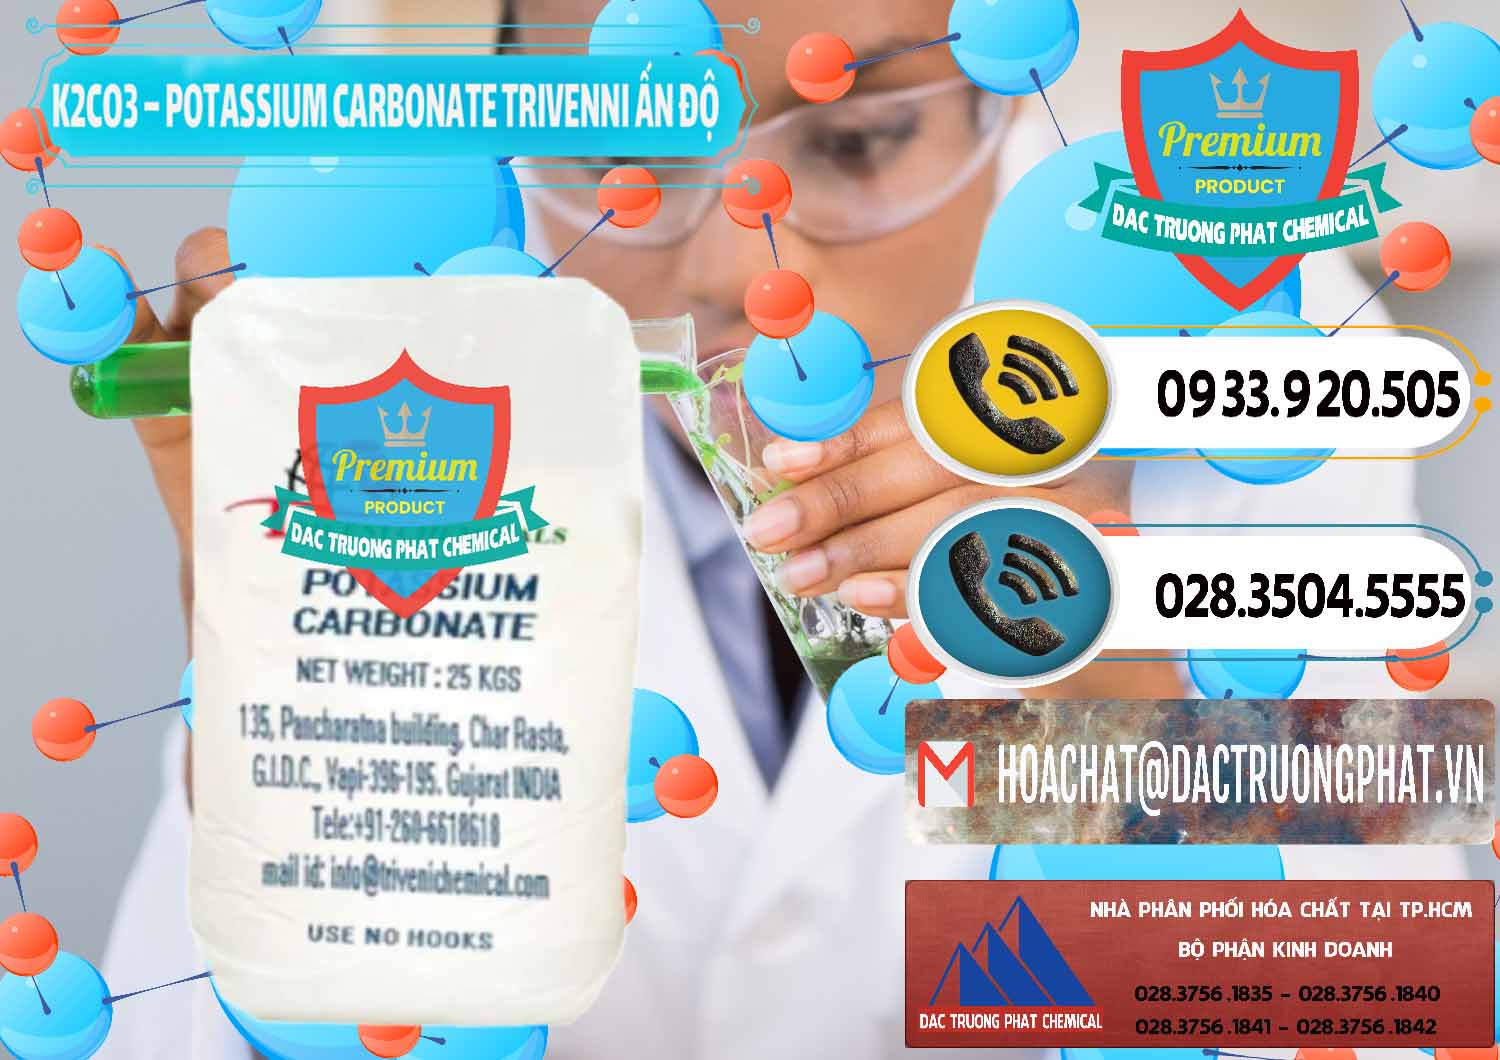 Công ty chuyên bán _ cung ứng K2Co3 – Potassium Carbonate Trivenni Ấn Độ India - 0473 - Cung cấp ( kinh doanh ) hóa chất tại TP.HCM - hoachatdetnhuom.vn